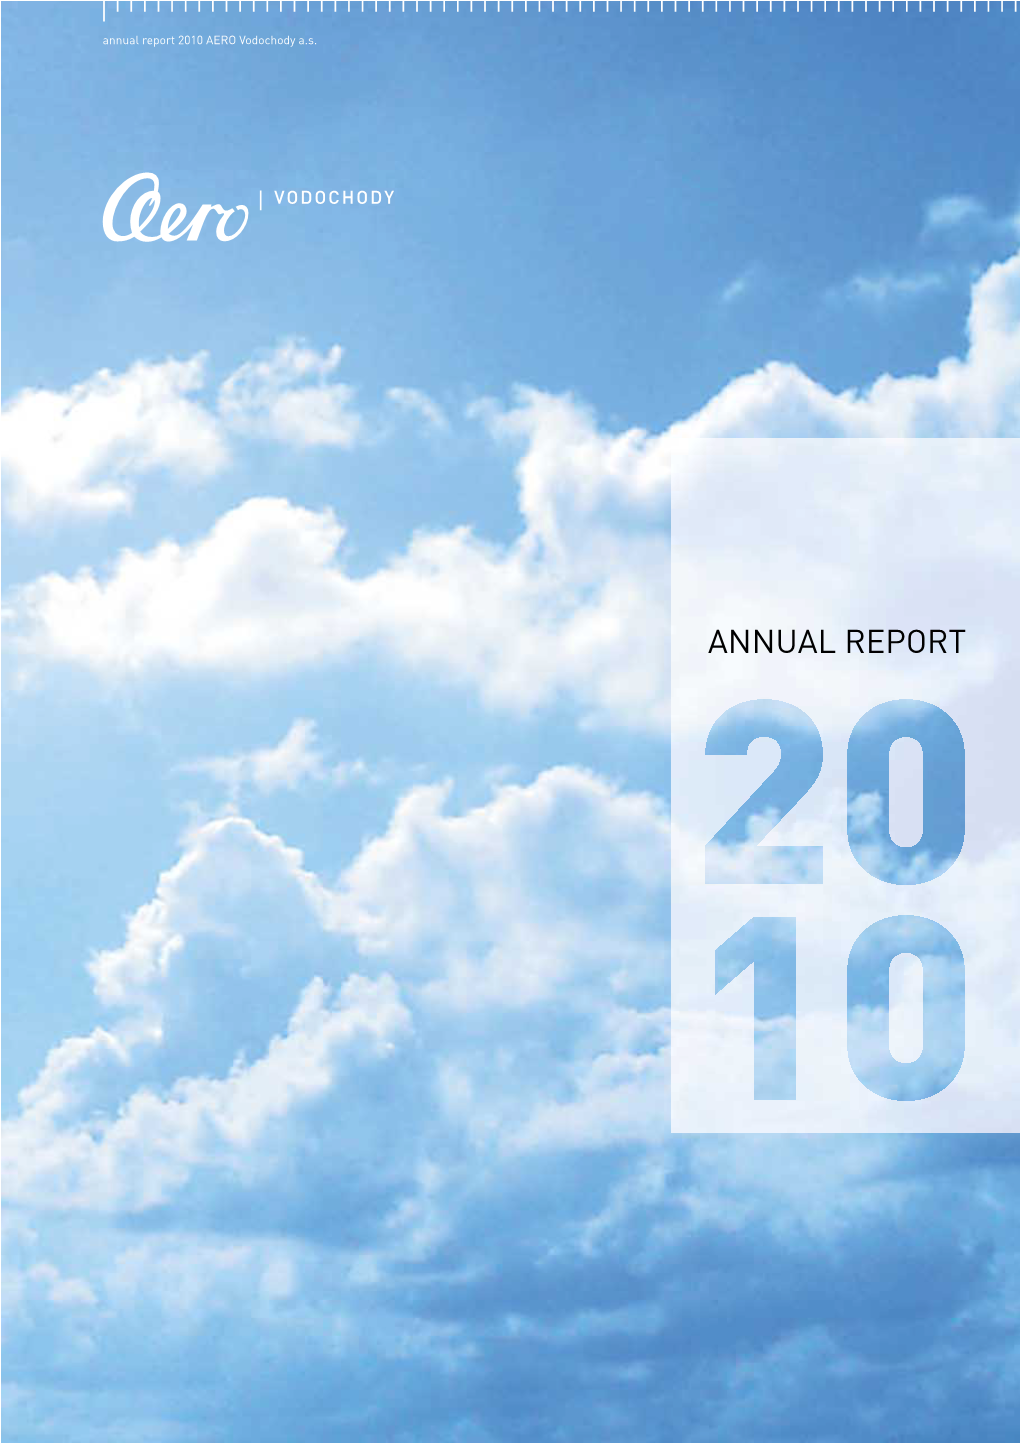 Annual Report 2010 AERO Vodochody A.S